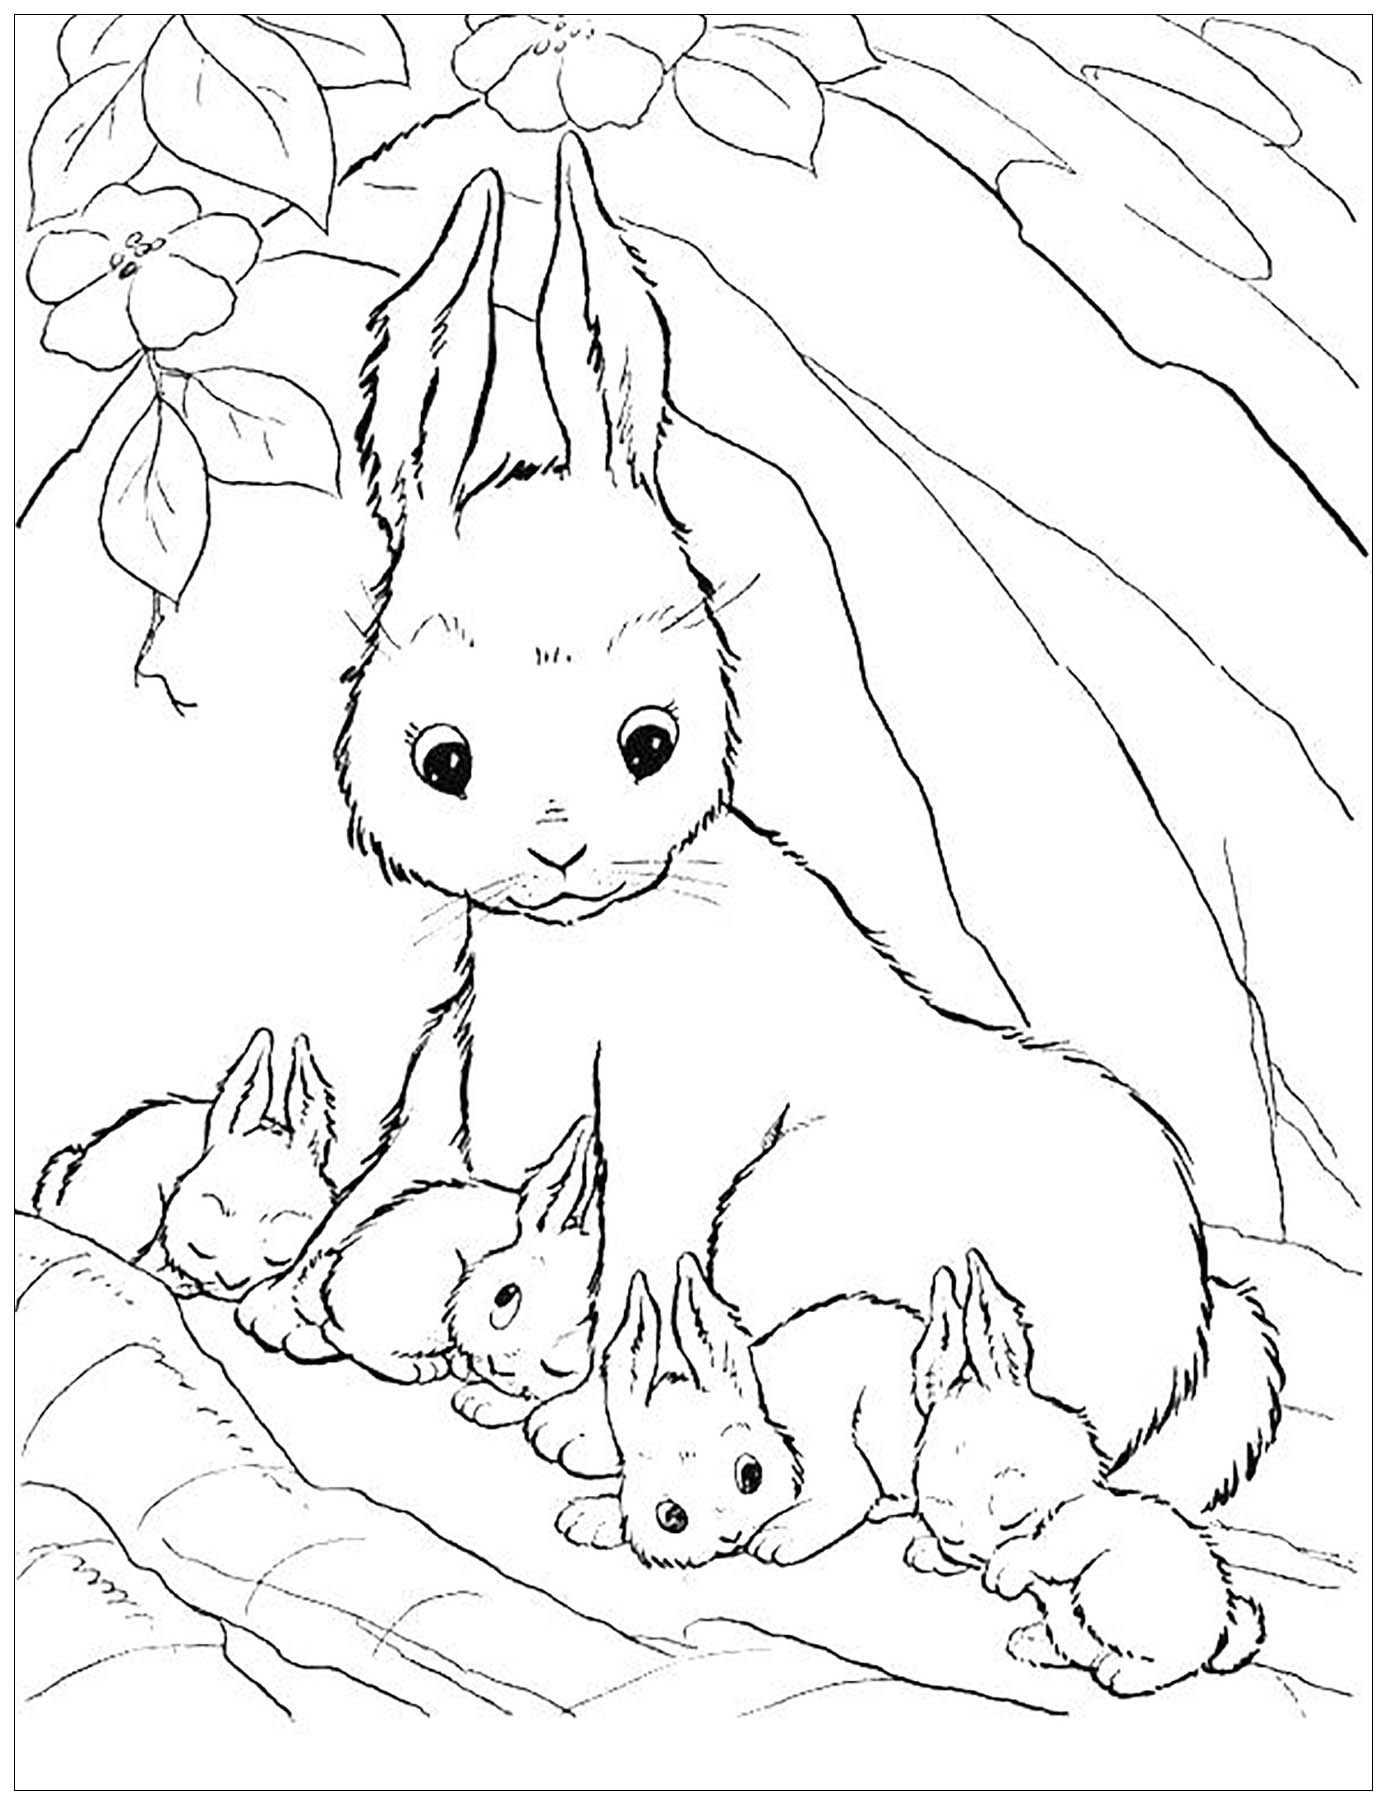 Dibujo de Conejo para colorear, fácil para los niños